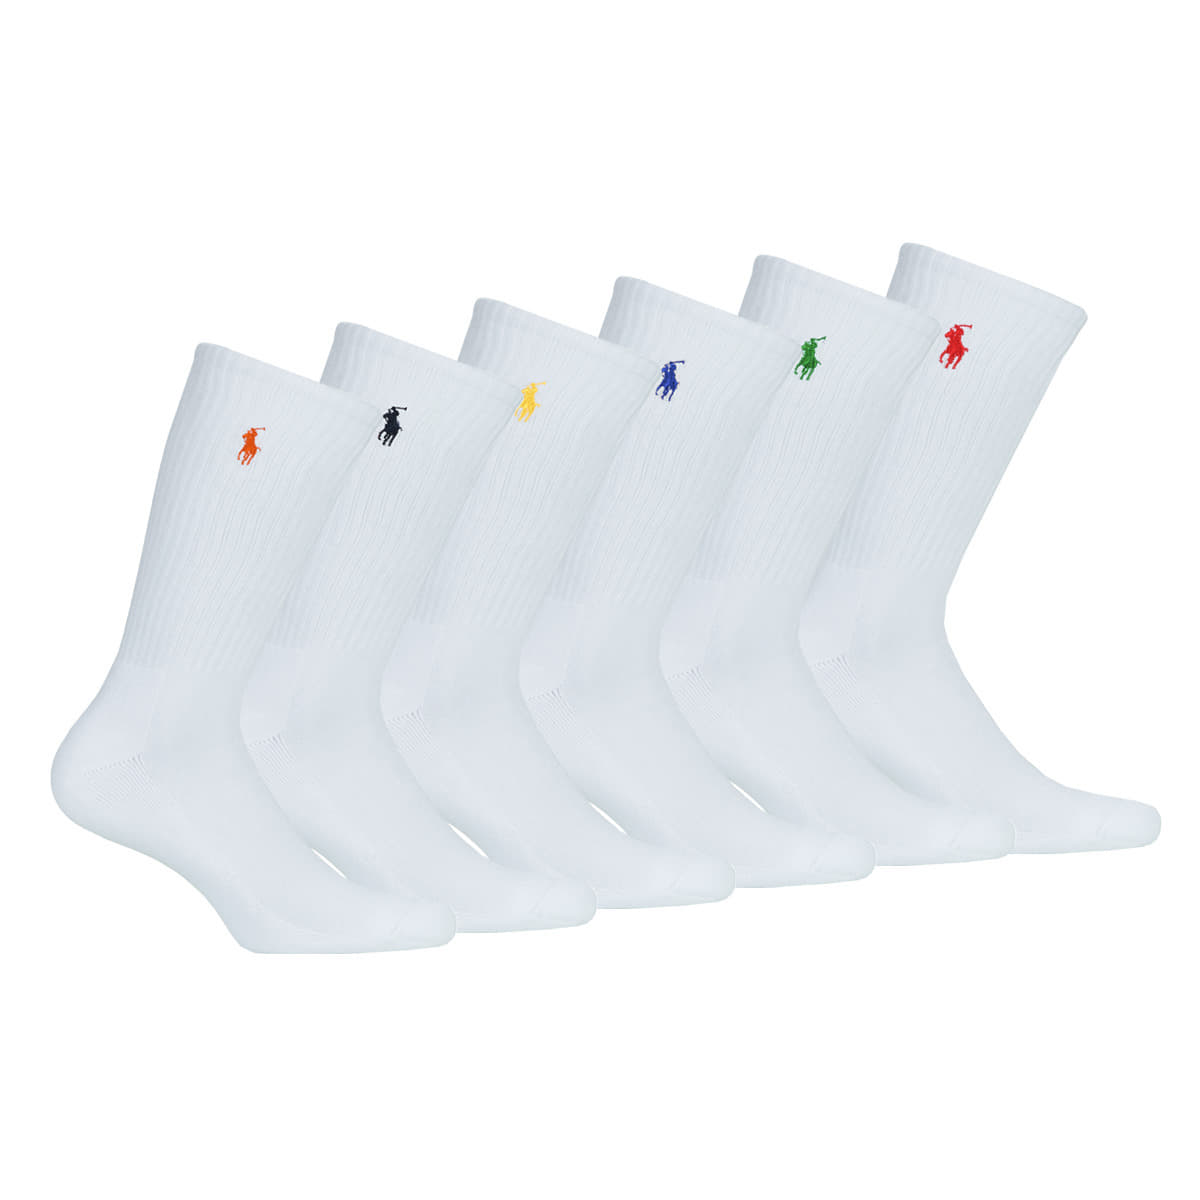 Socks Polo Ralph Lauren Men's Cotton 6-Pack Socks White